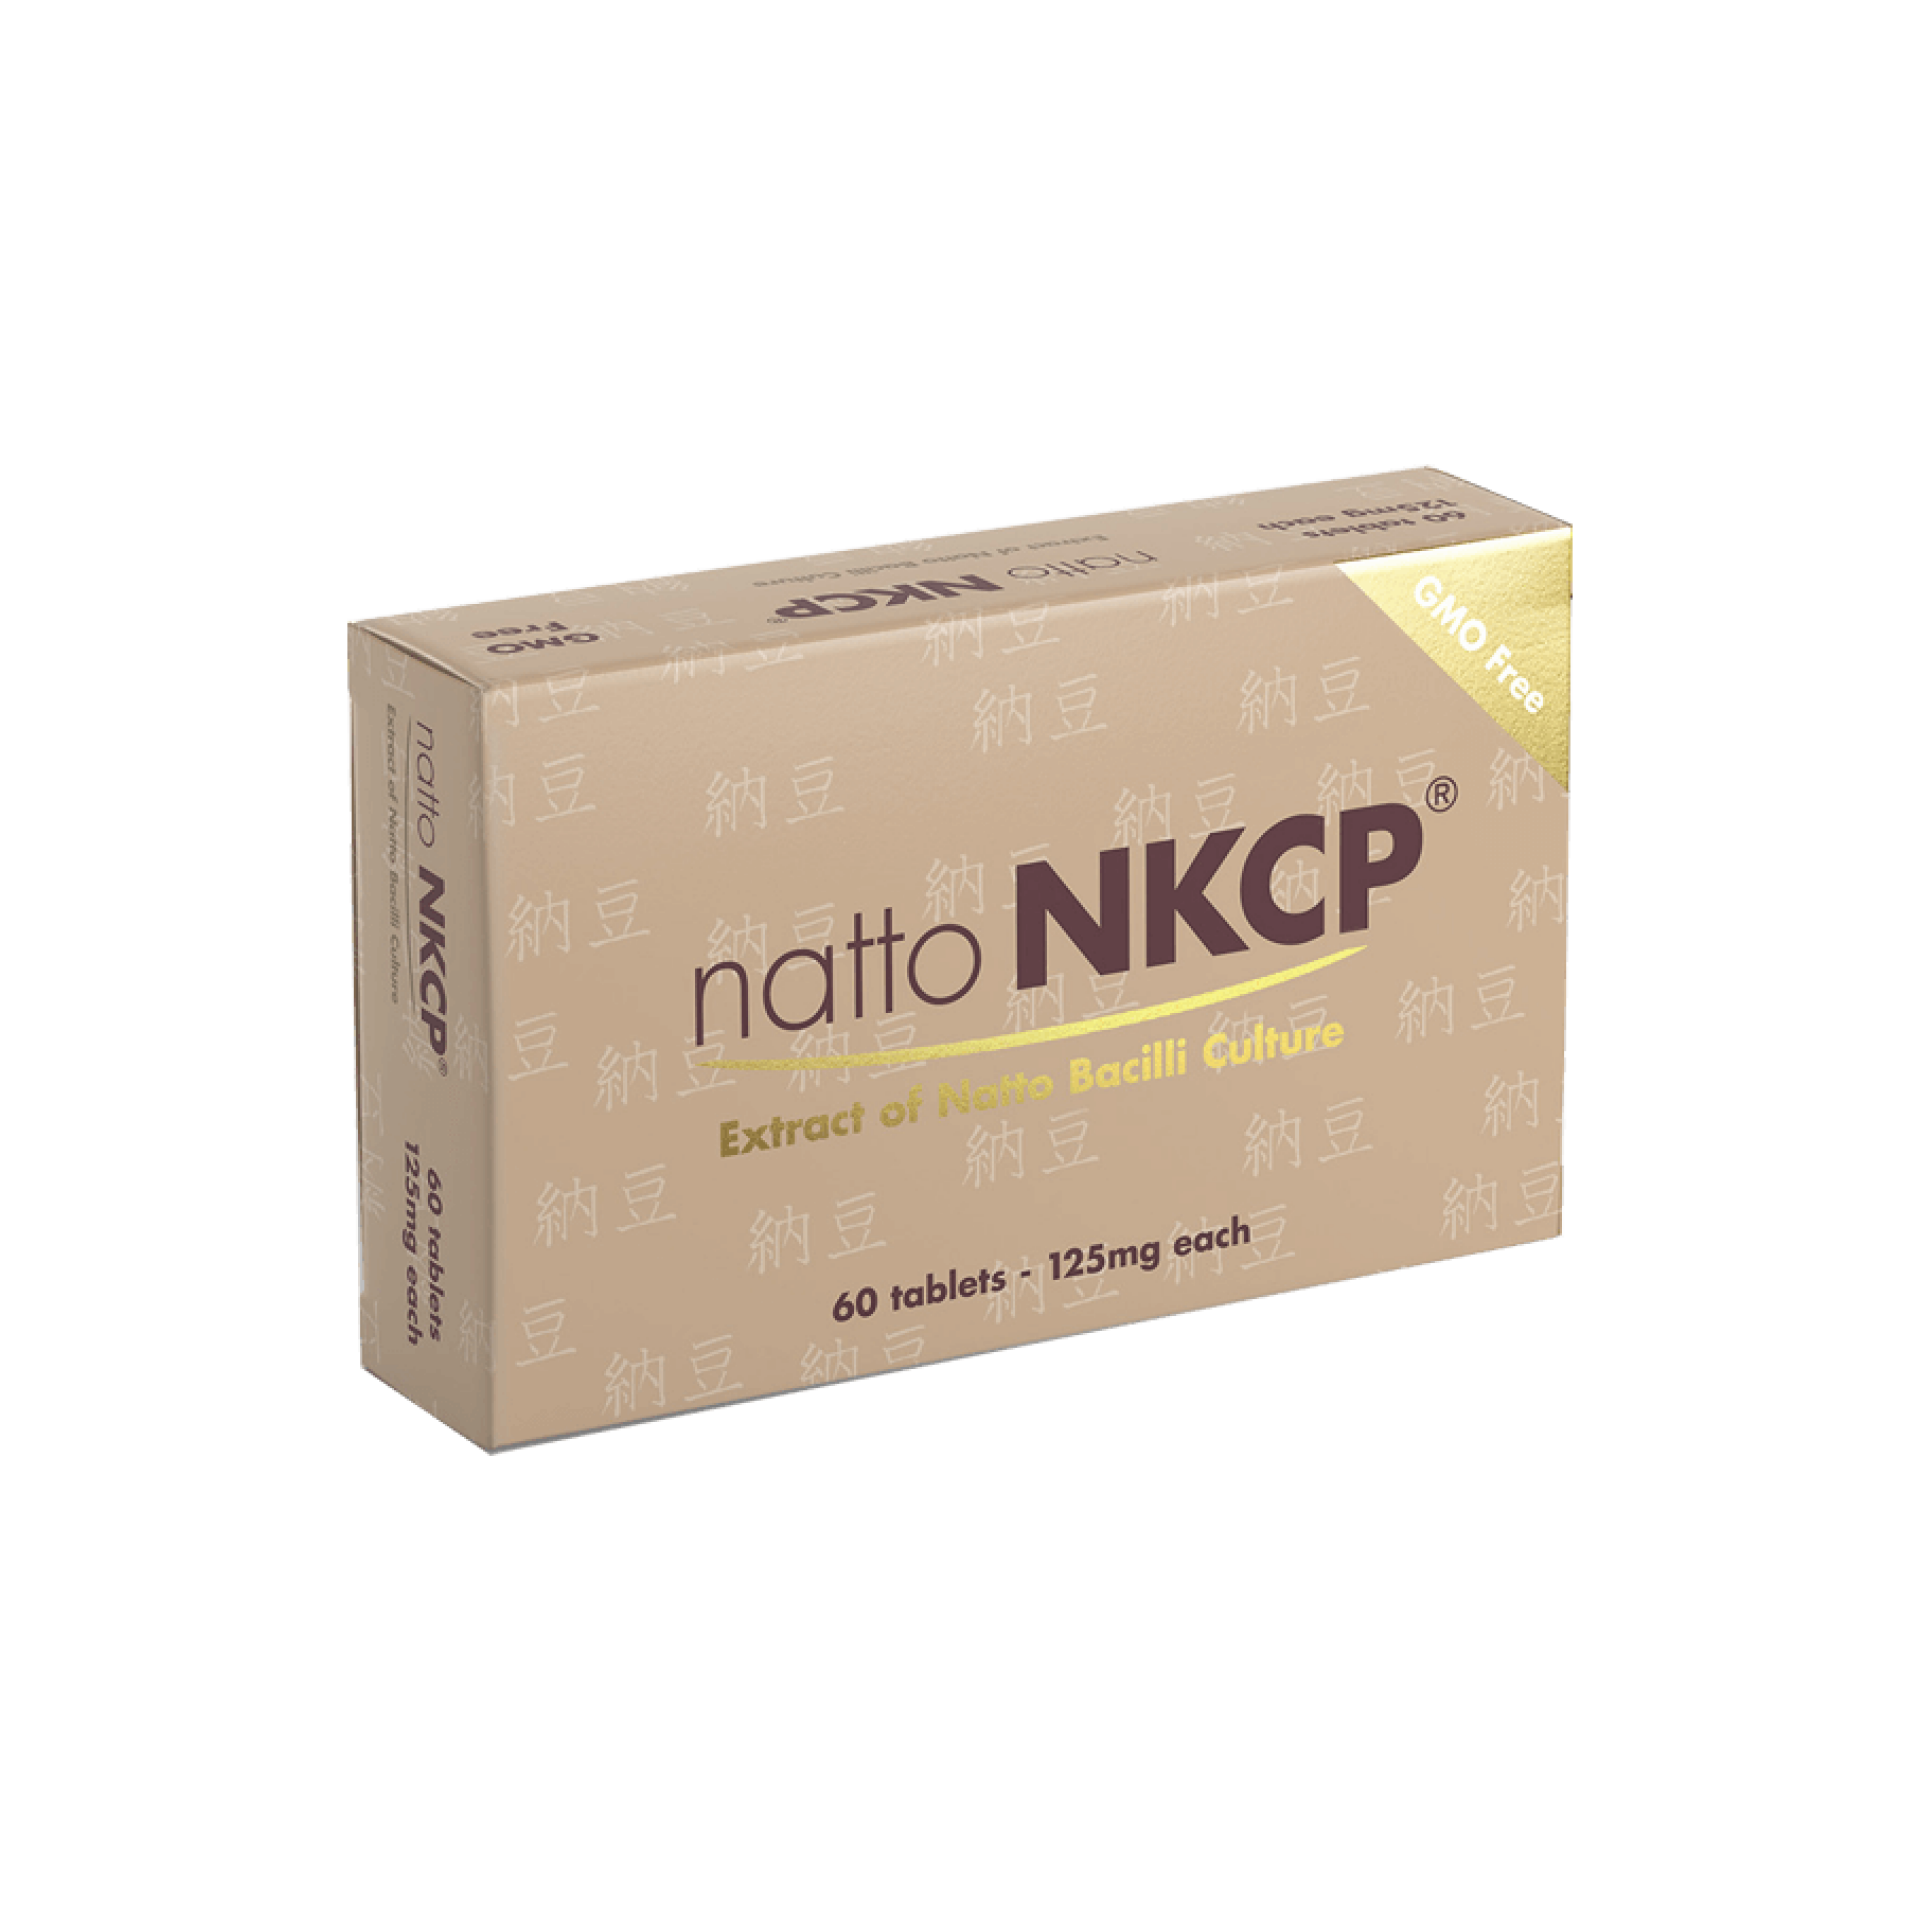 Natto NKCP-verpakking vooraanzicht